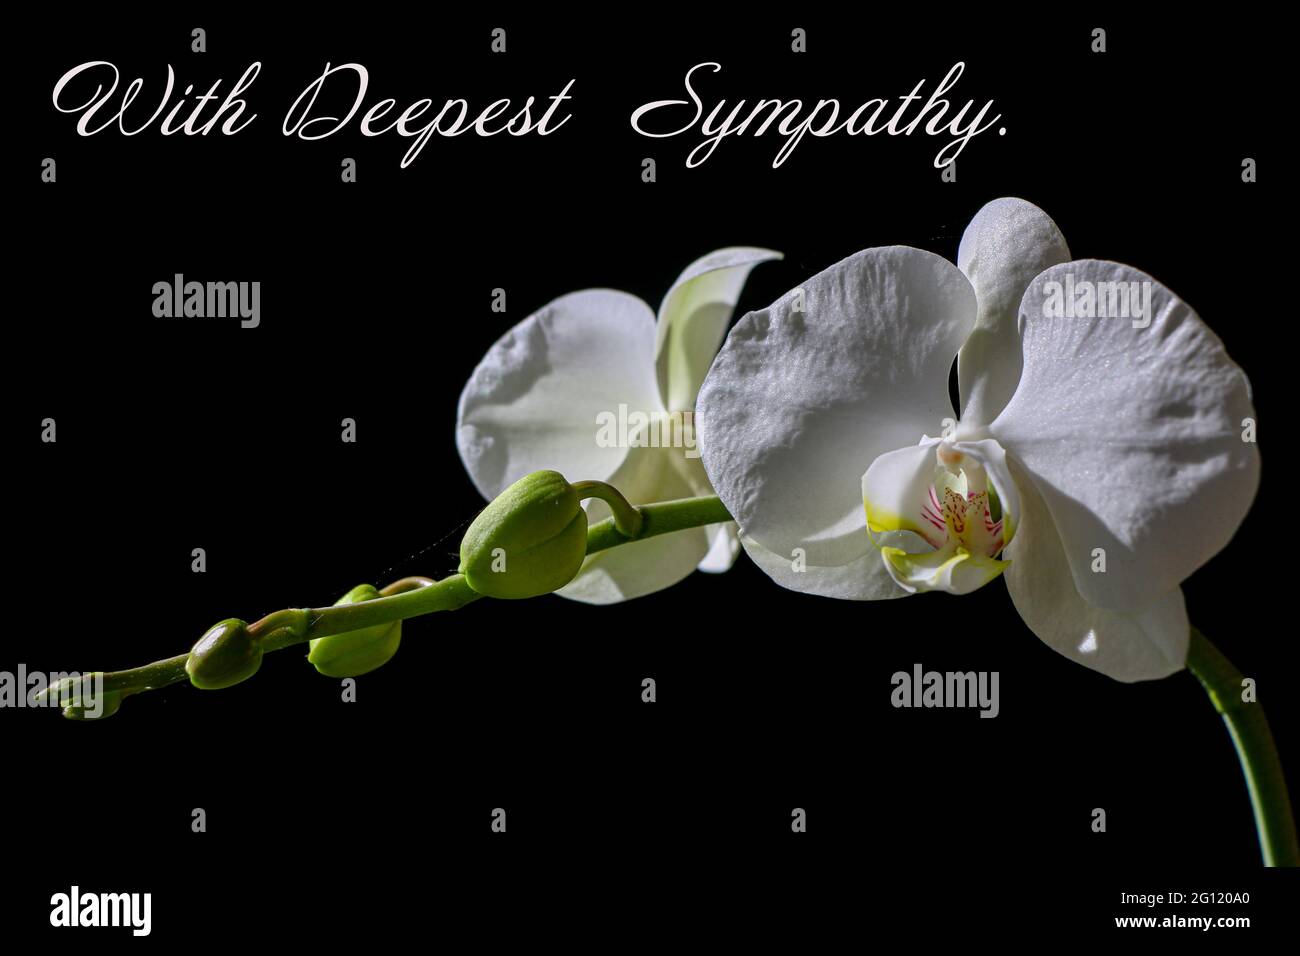 Un orchidea bianca su sfondo nero con la più profonda simpatia come il testo sull'immagine Foto Stock